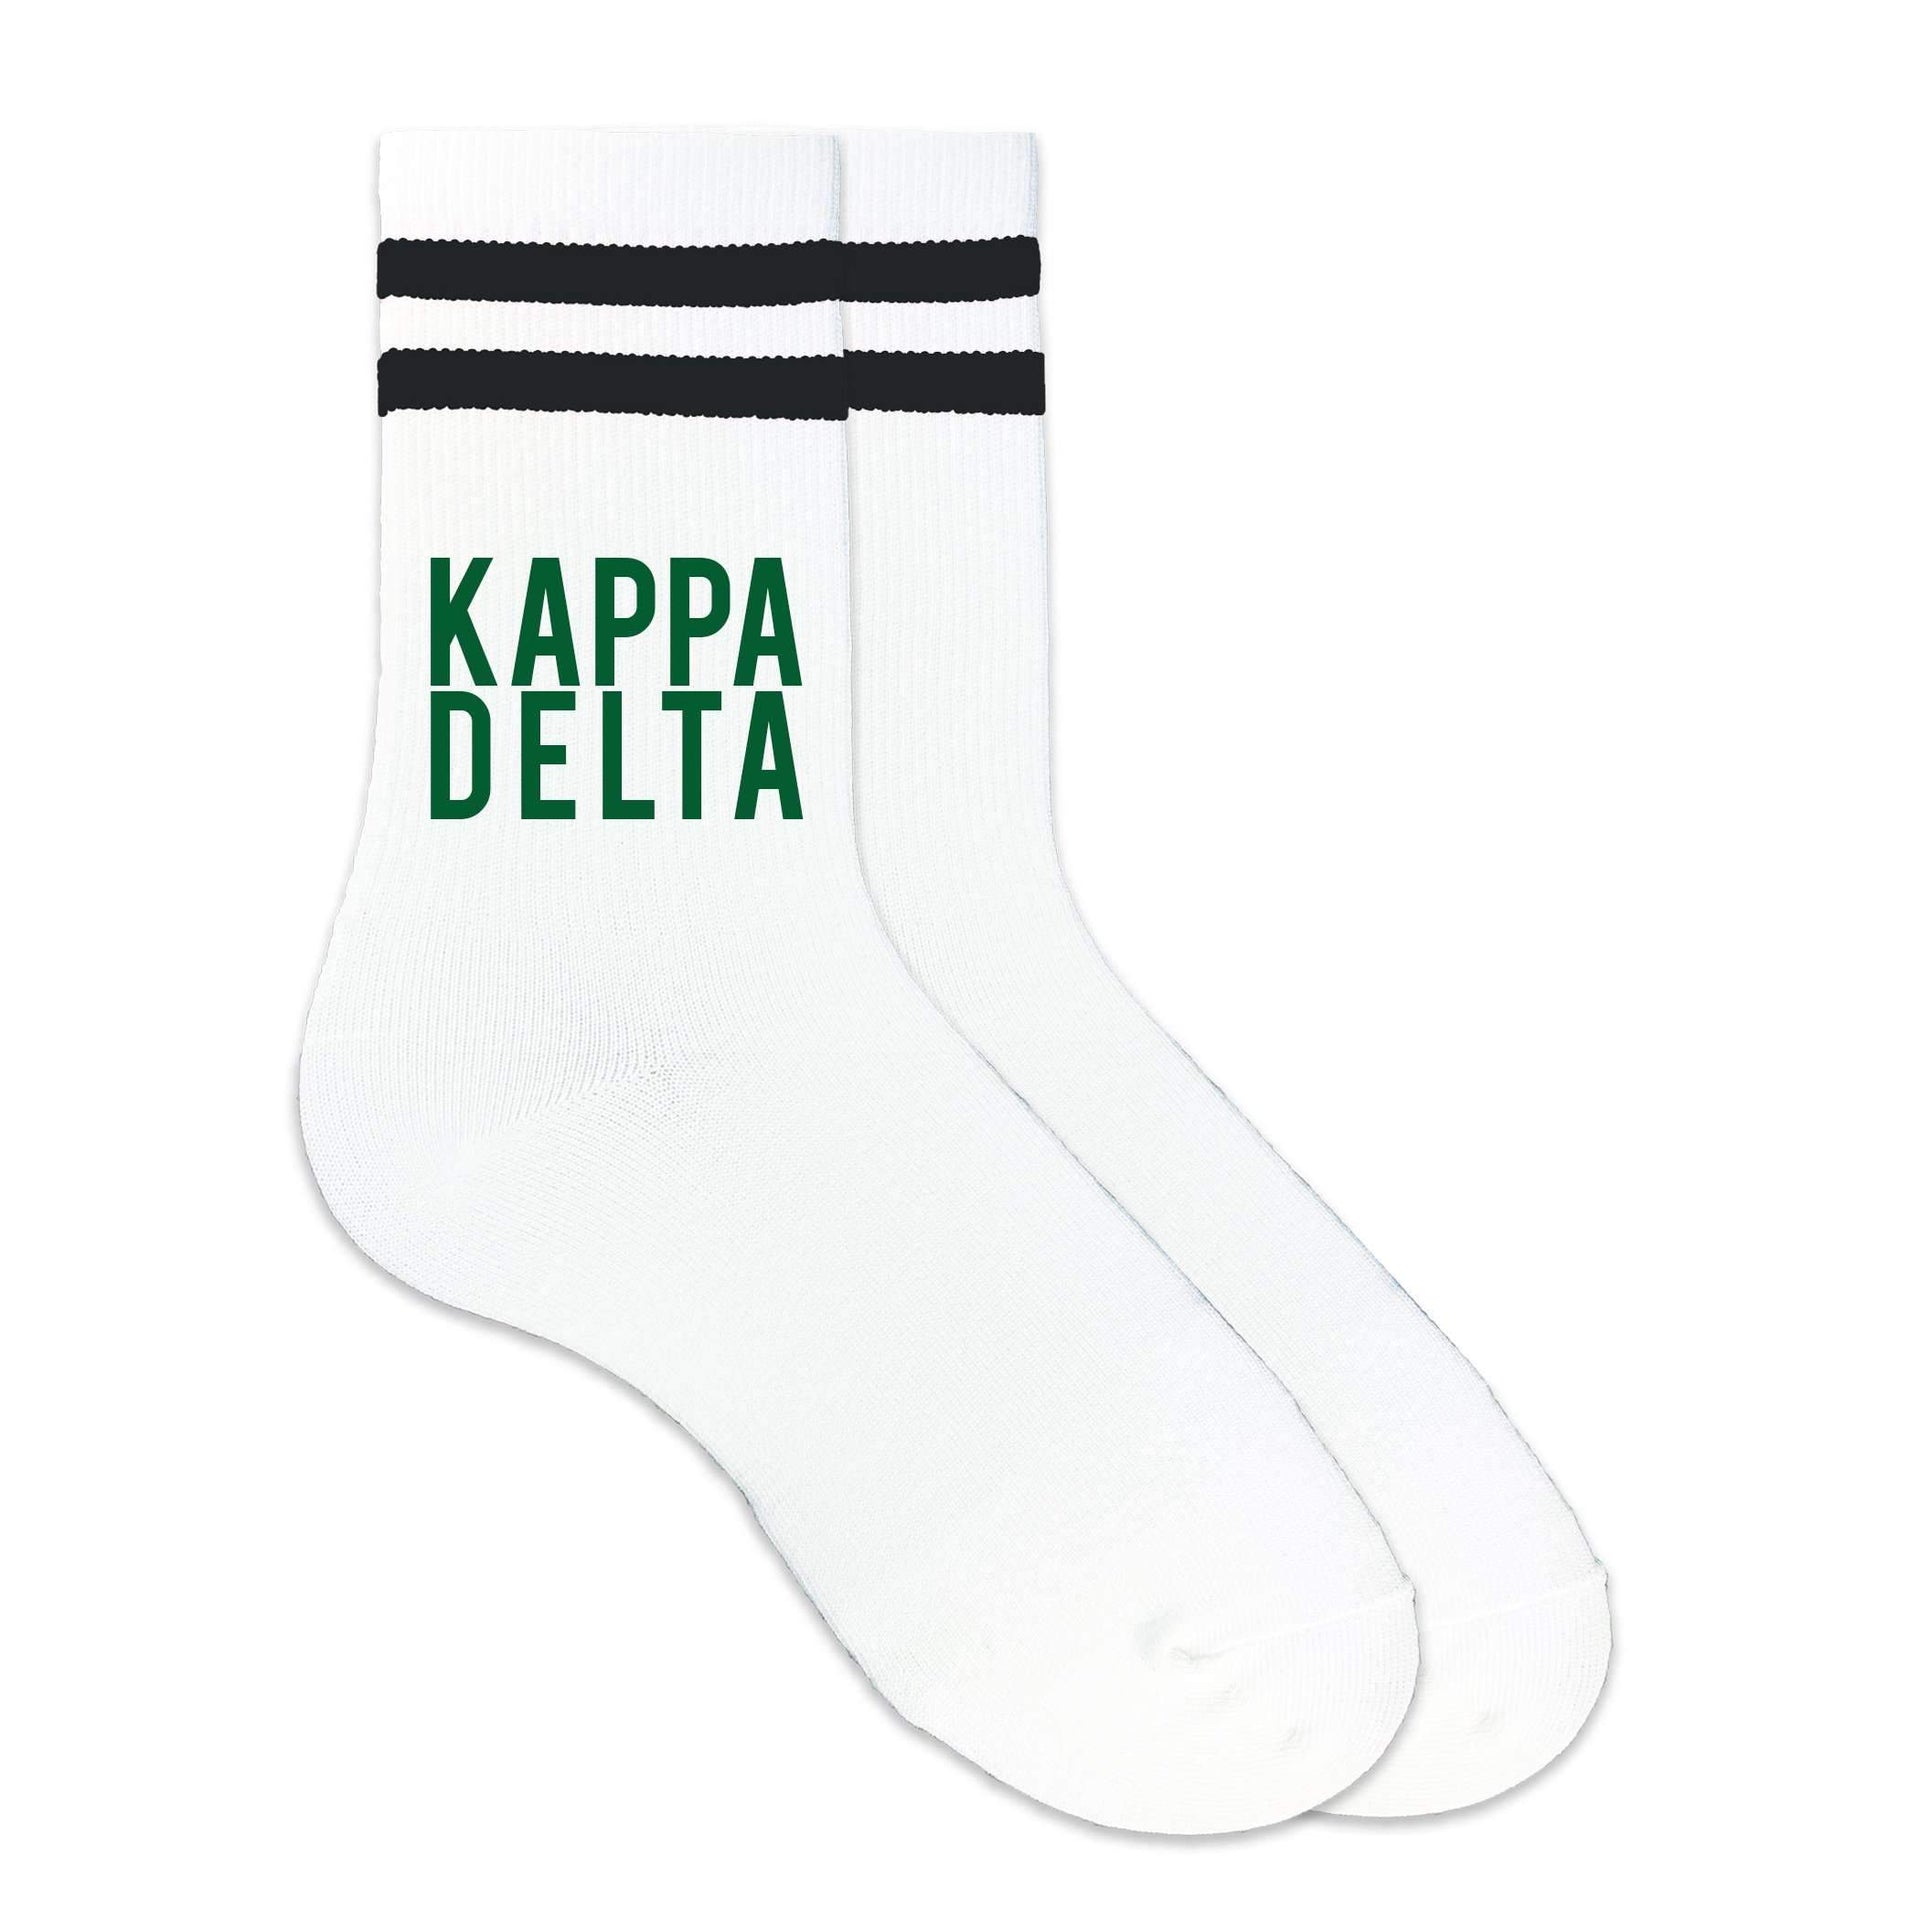 Kappa Delta sorority name custom printed in sorority colors on black striped crew socks